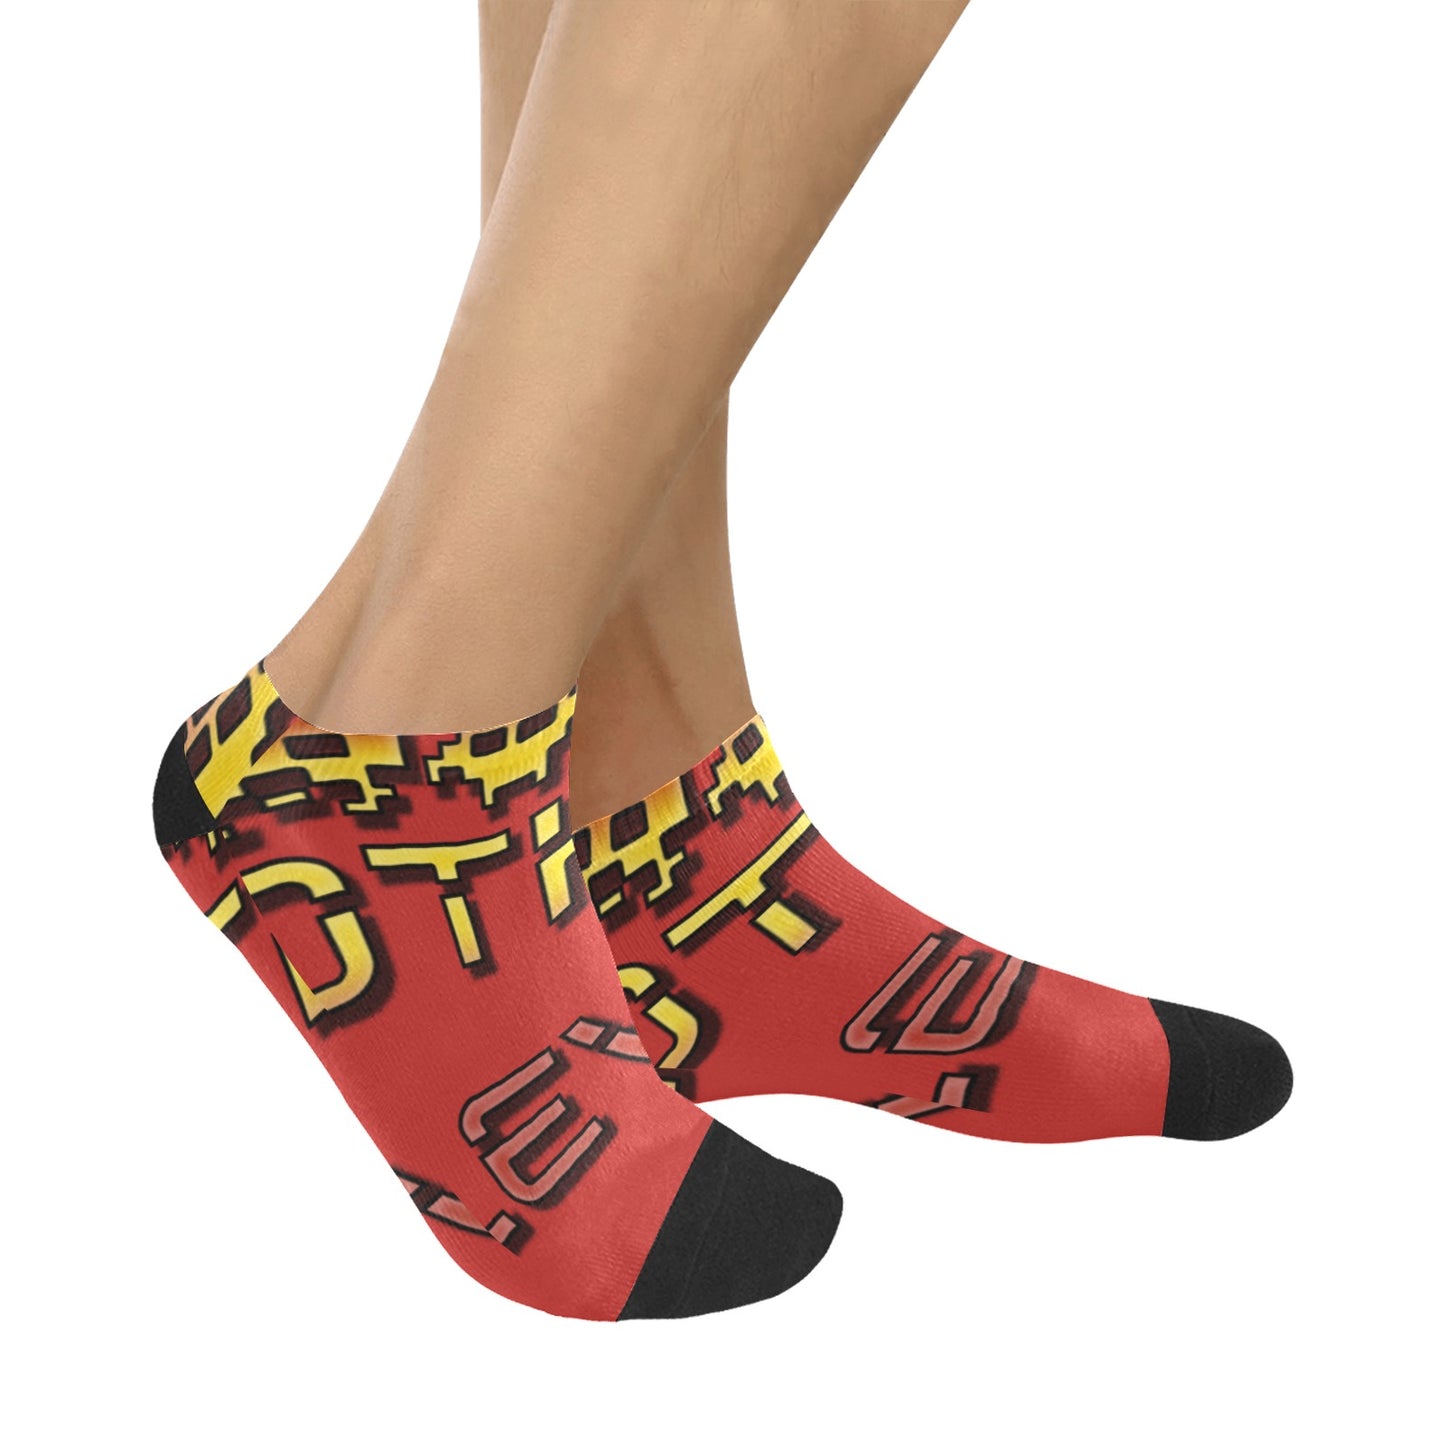 fz men's levels ankle socks one size / fz levels socks - red men's ankle socks